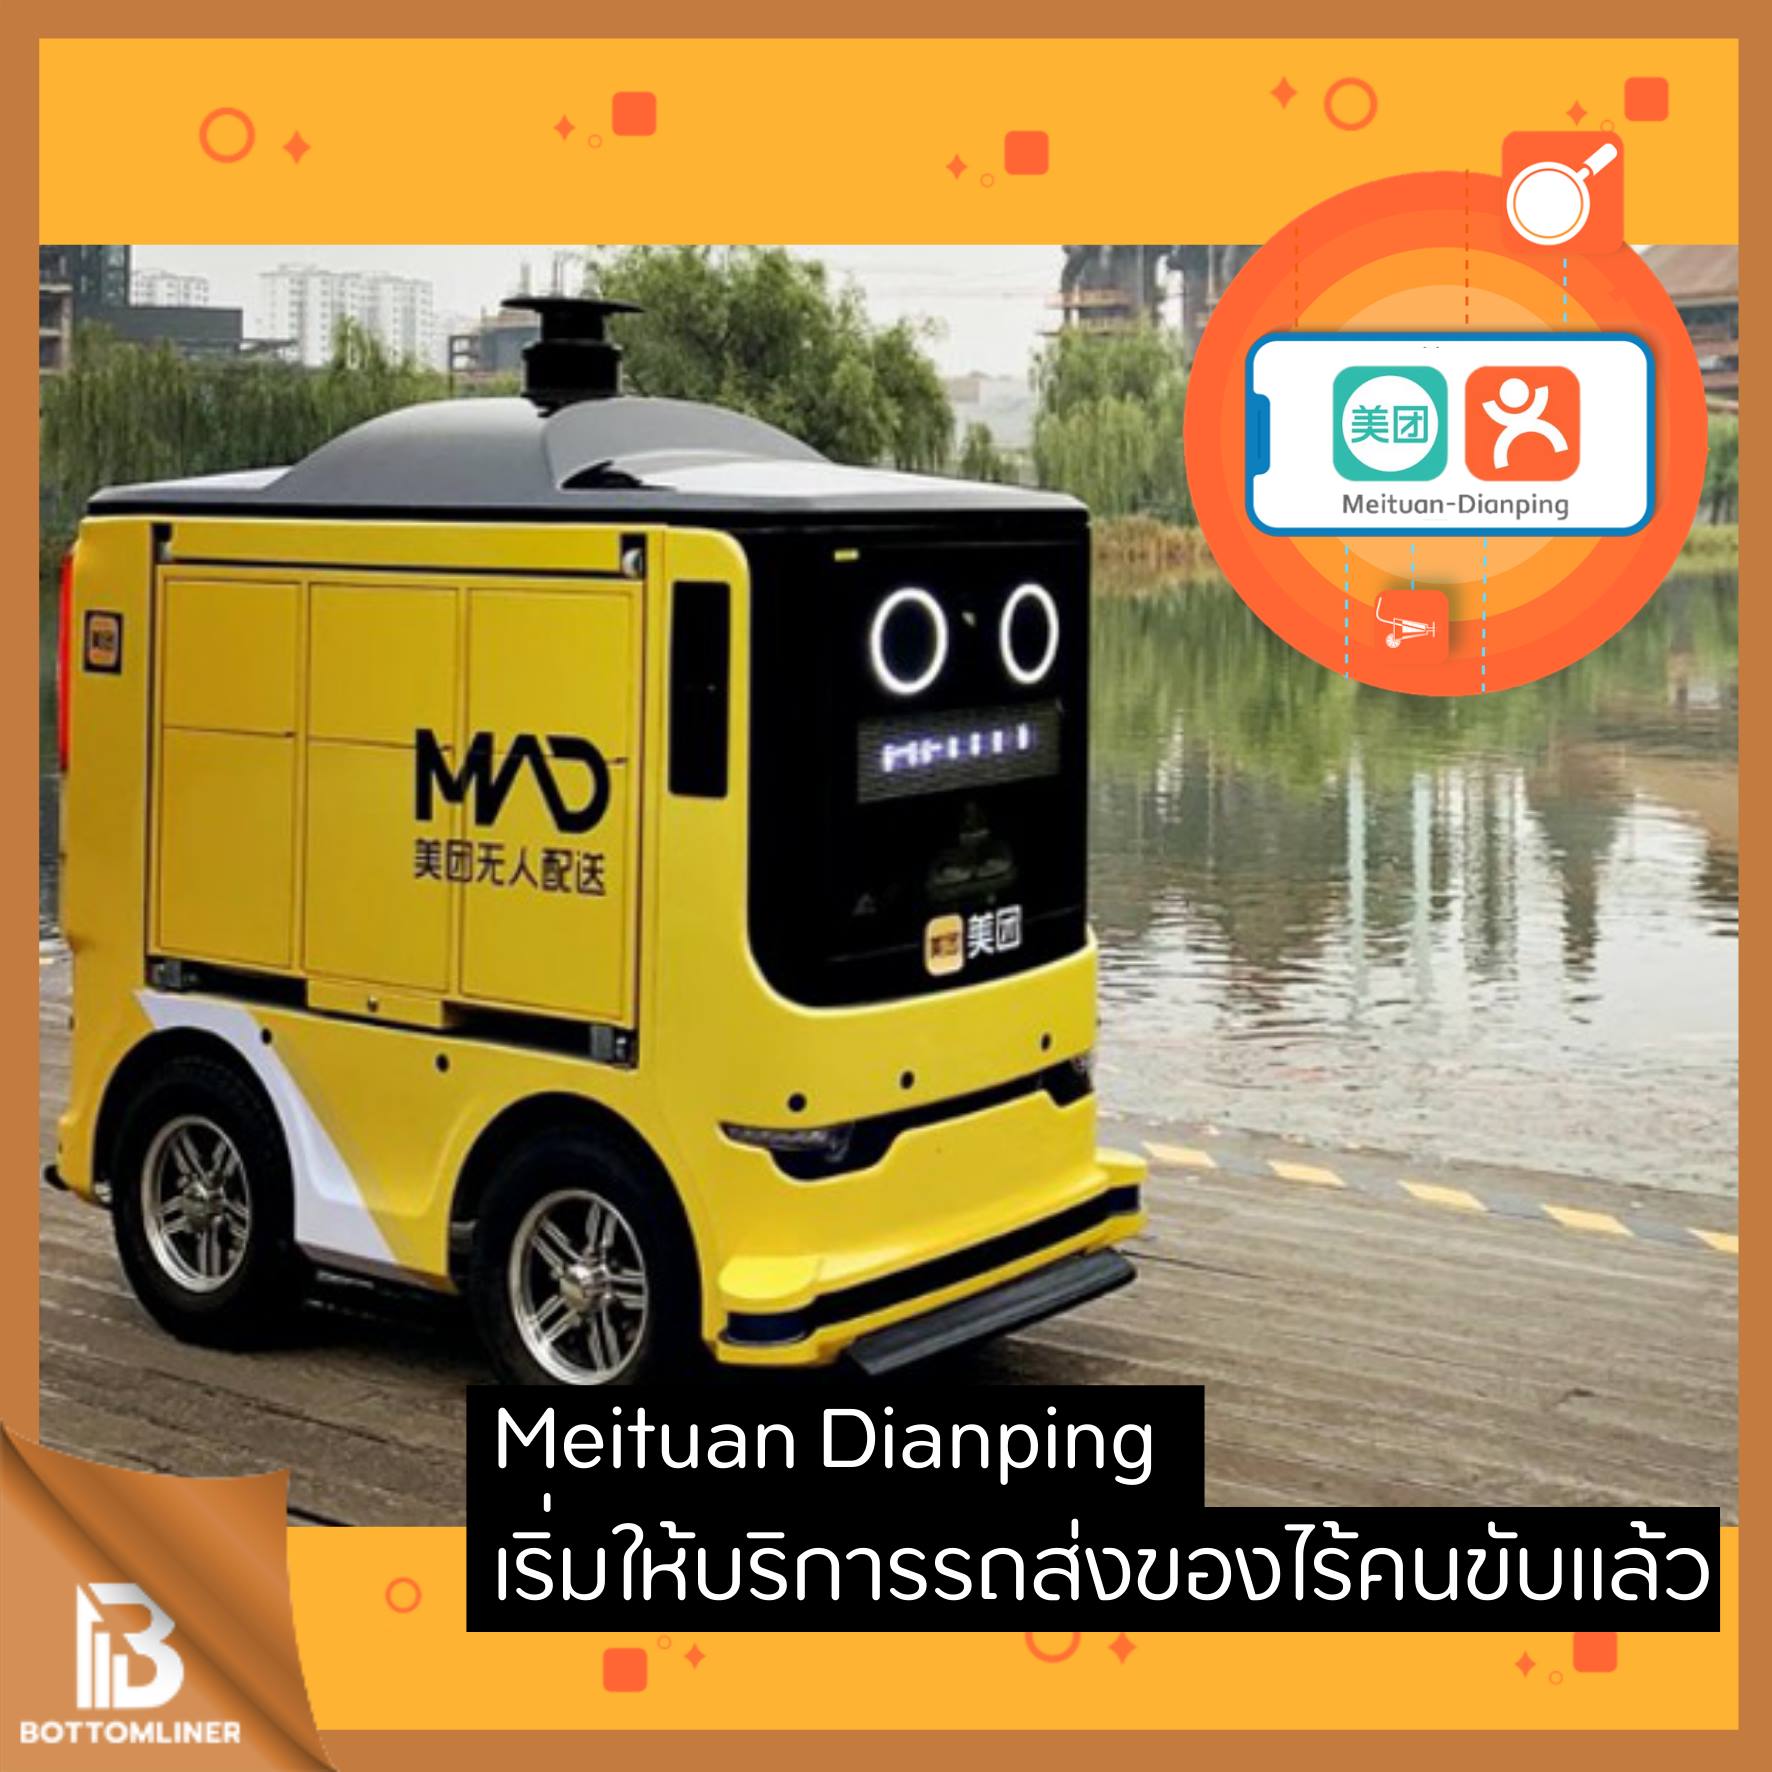 Meituan Dianping เปิดตัวรถส่งของไร้คนขับ